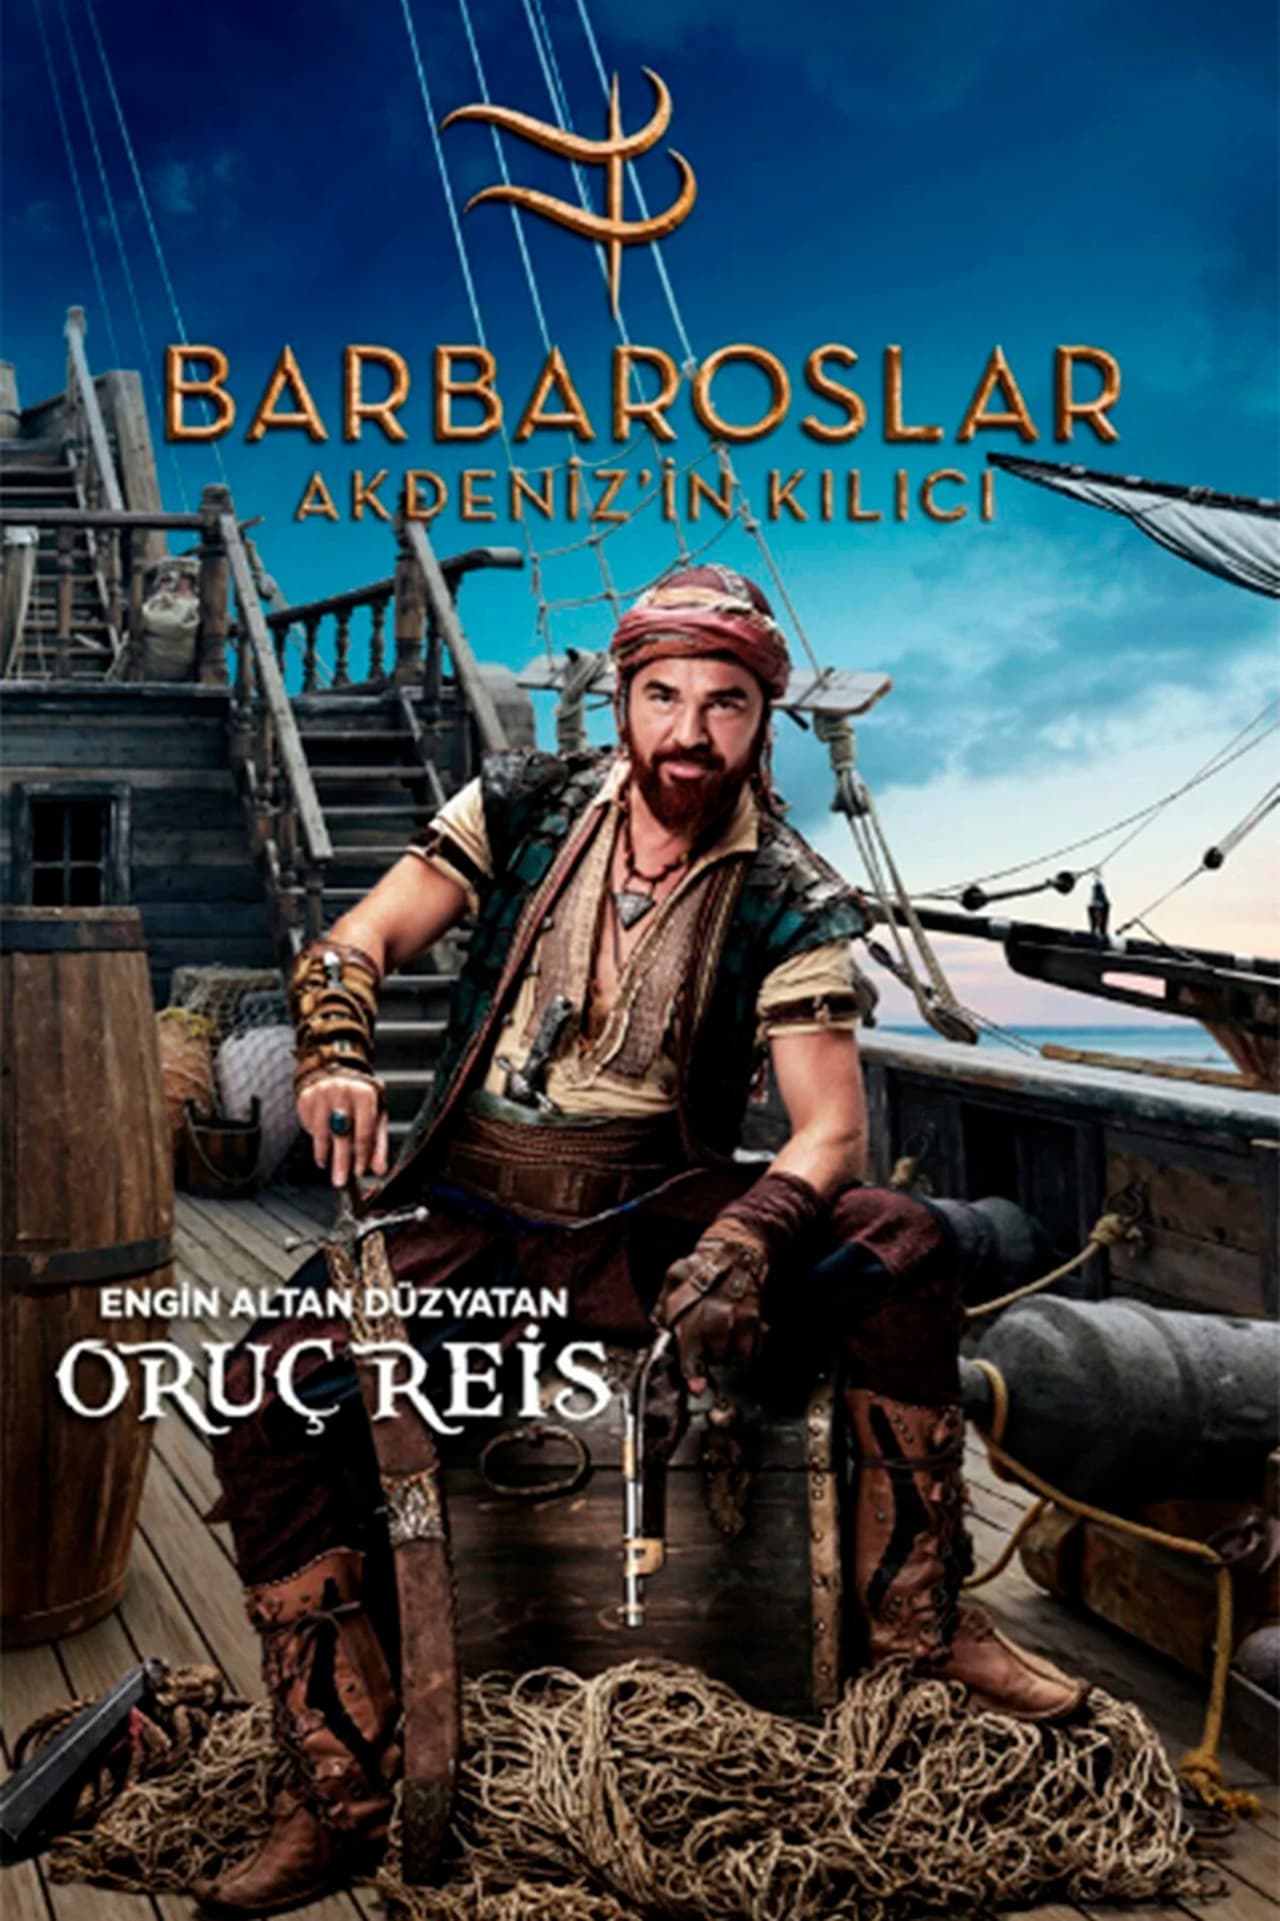 Barbaroslar Akdeniz’in Kılıcı: Temporada 1